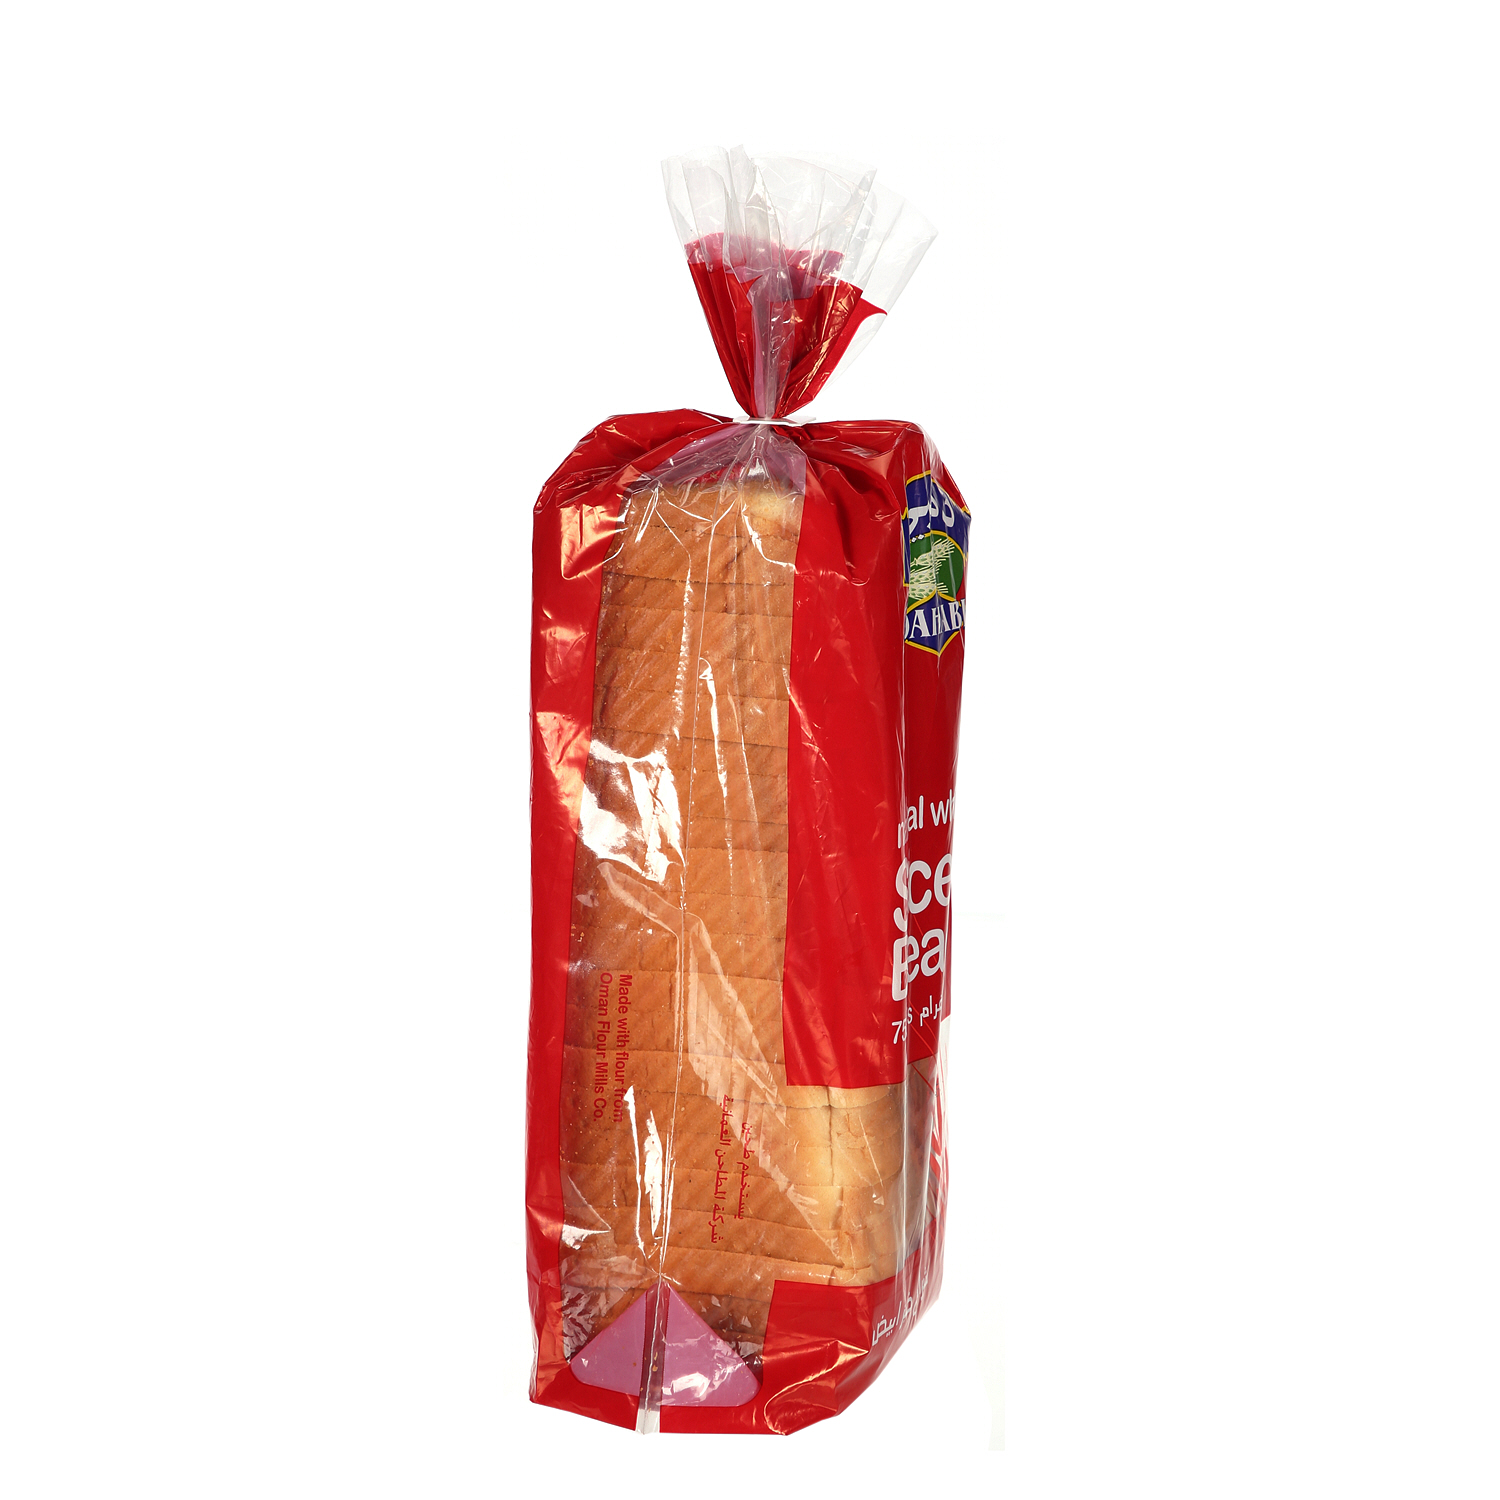 Dahabi Sliced Bread White 750 g